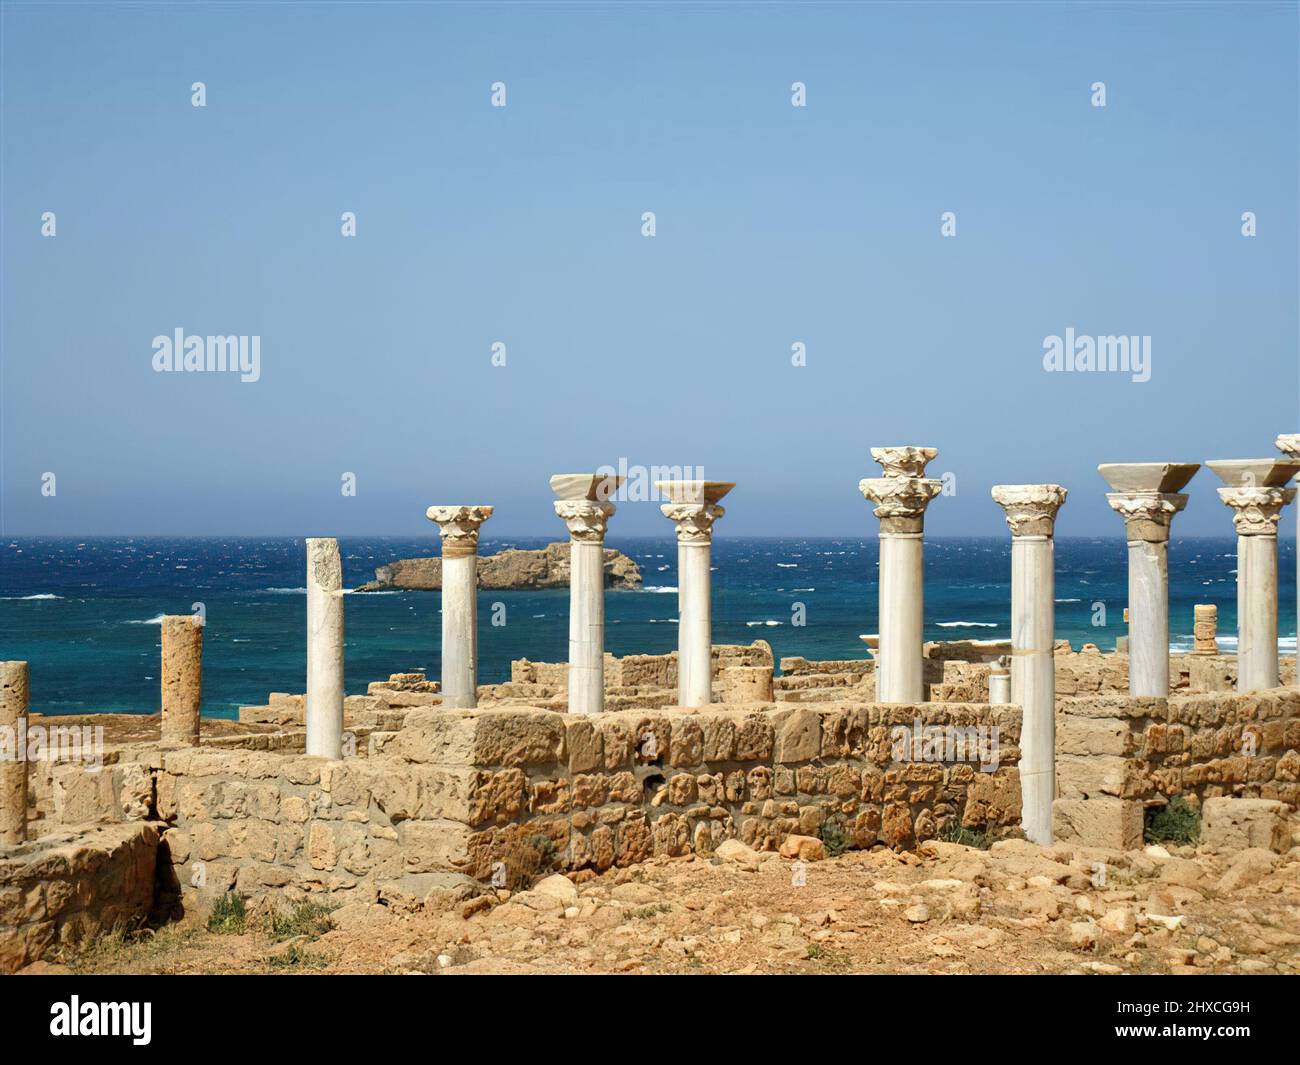 Apollonia en Cyrénaïque a été fondée par des colons grecs et est devenue un important centre commercial dans le sud de la Méditerranée situé en Libye Banque D'Images